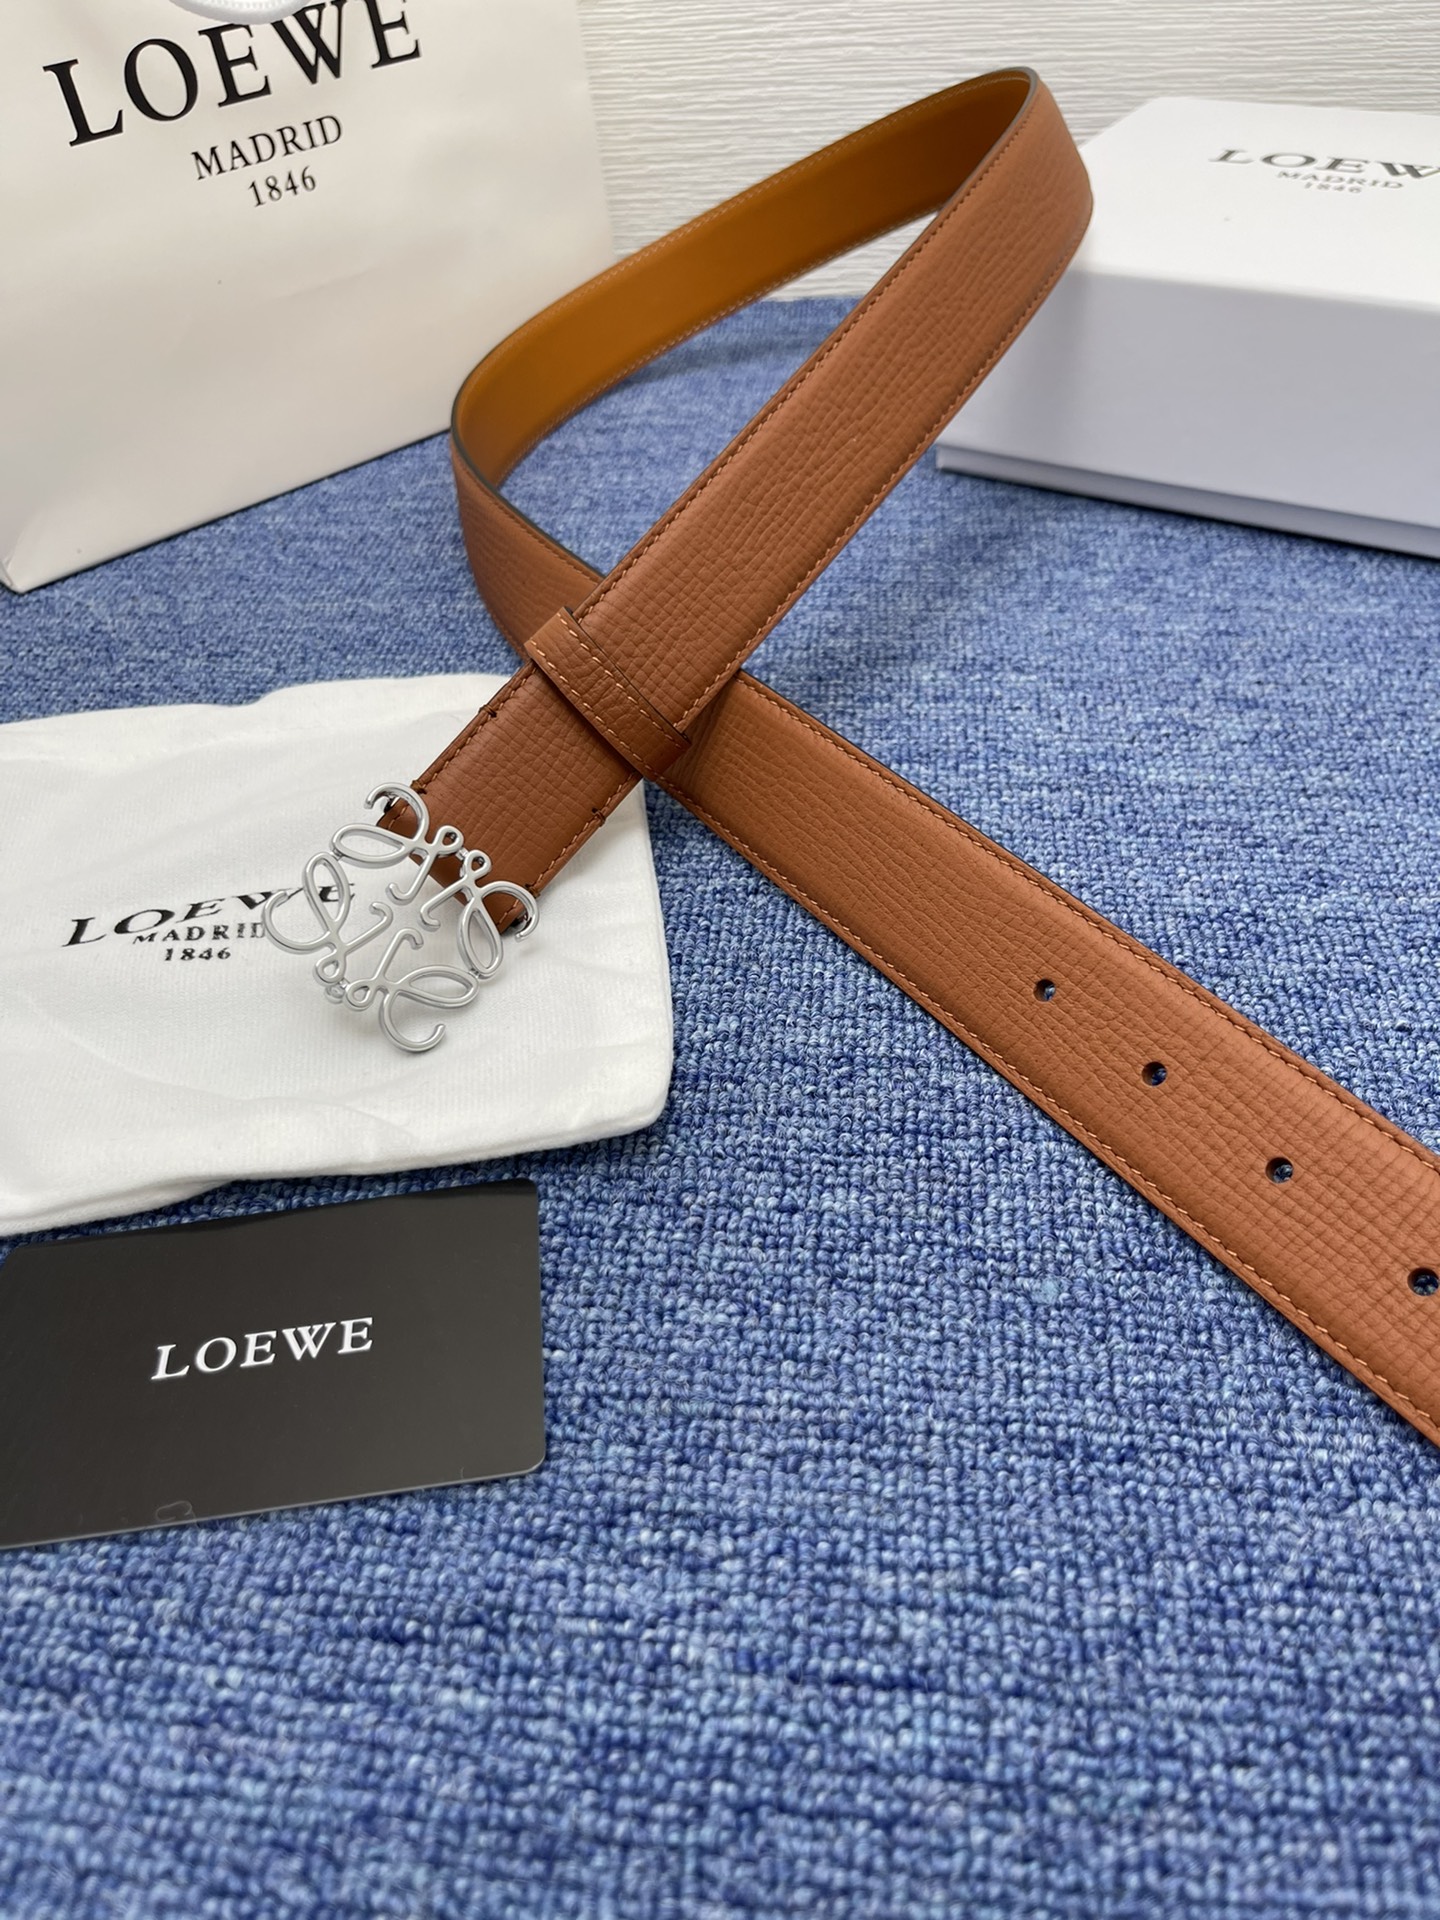 品牌罗意威描述经典系列新品腰带采用小牛皮材质完美搭配手工车线两款经典配色可搭配商务西装或更为休闲的造型腰